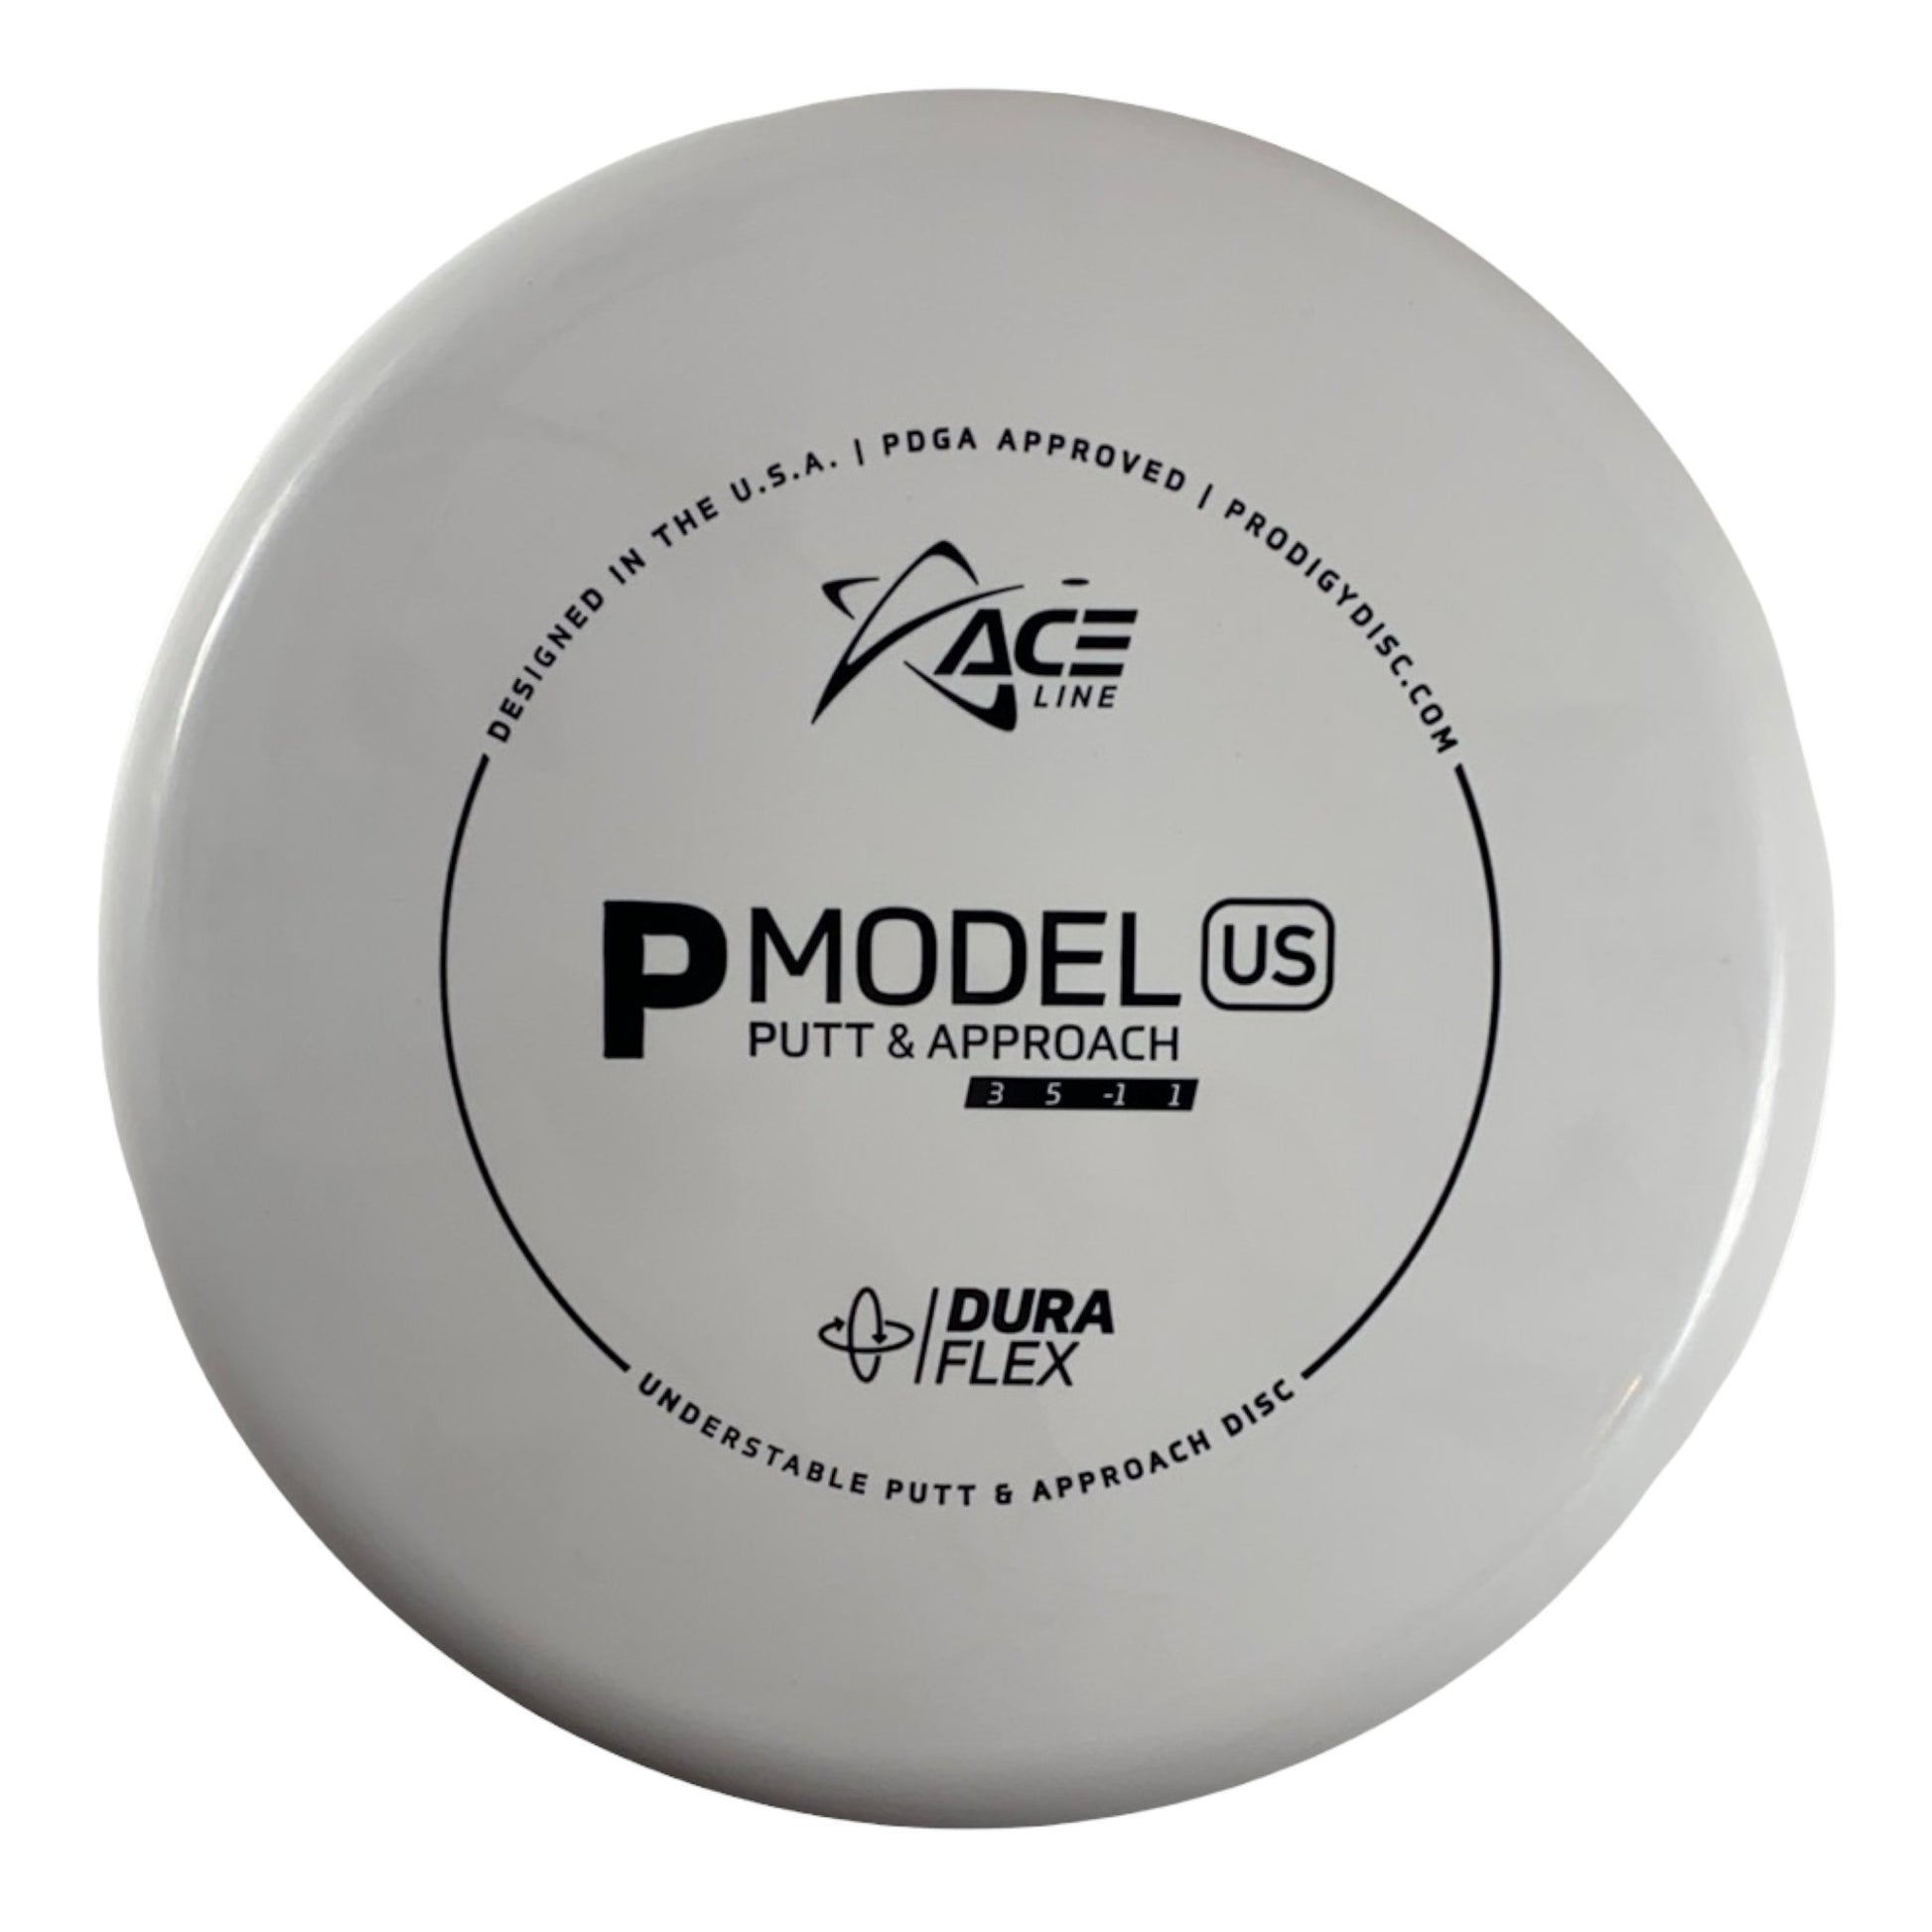 Prodigy Disc P Model US | Dura Flex | White/Black 174g Disc Golf